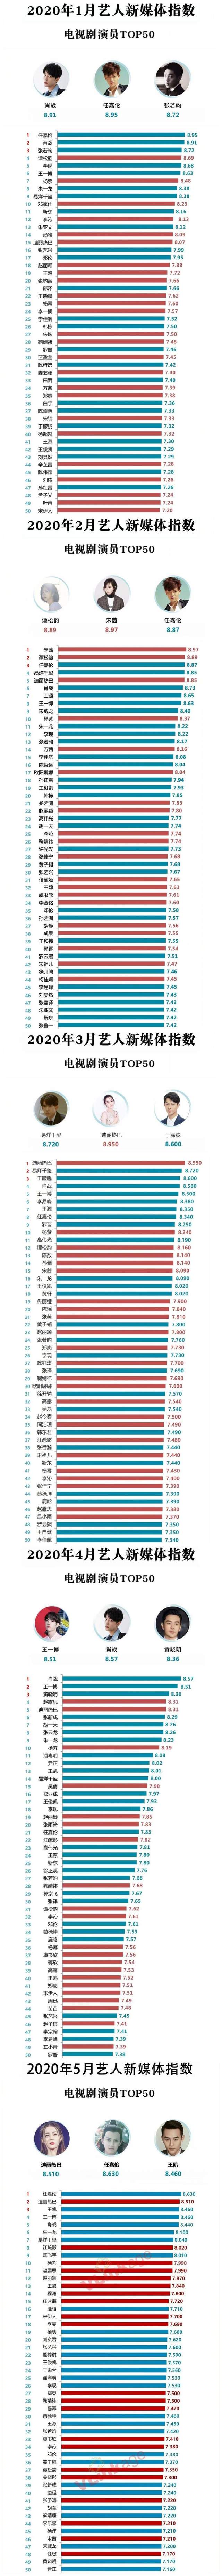 11月藝人新媒體指數：李易峰空降榜首，肖戰第三，唐嫣第四-圖5